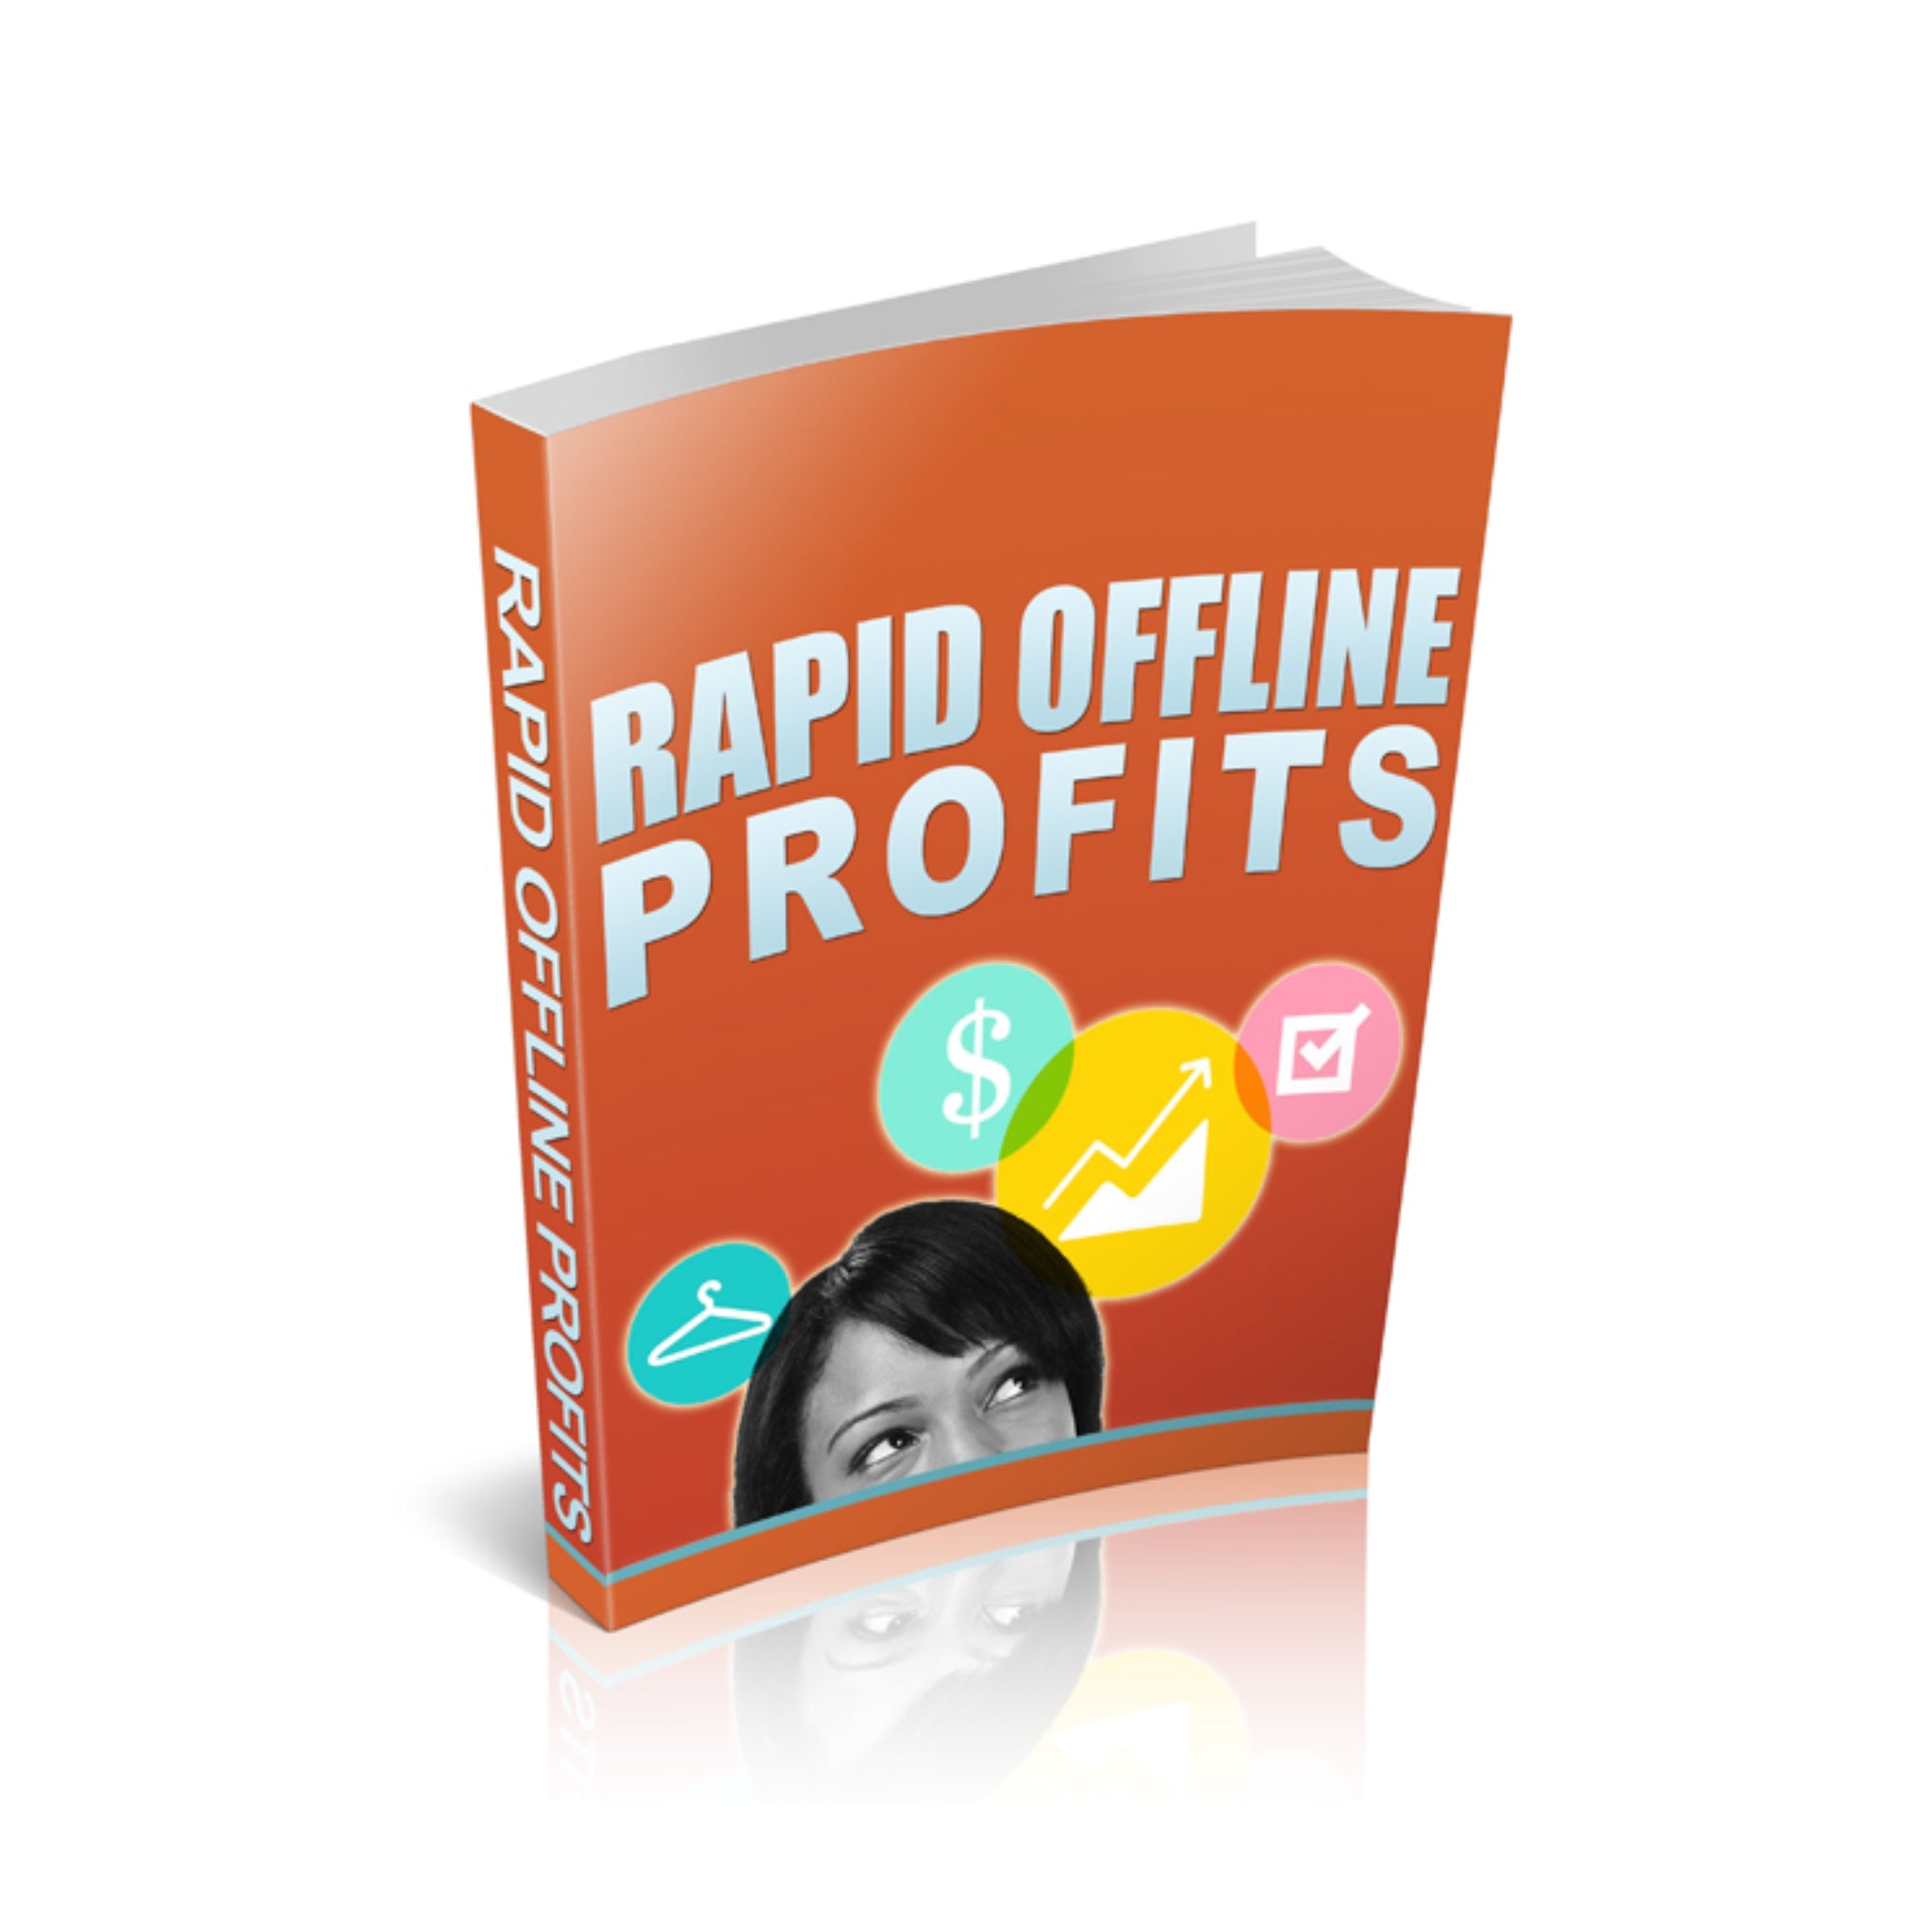 Rapid Offline Profits Ebook